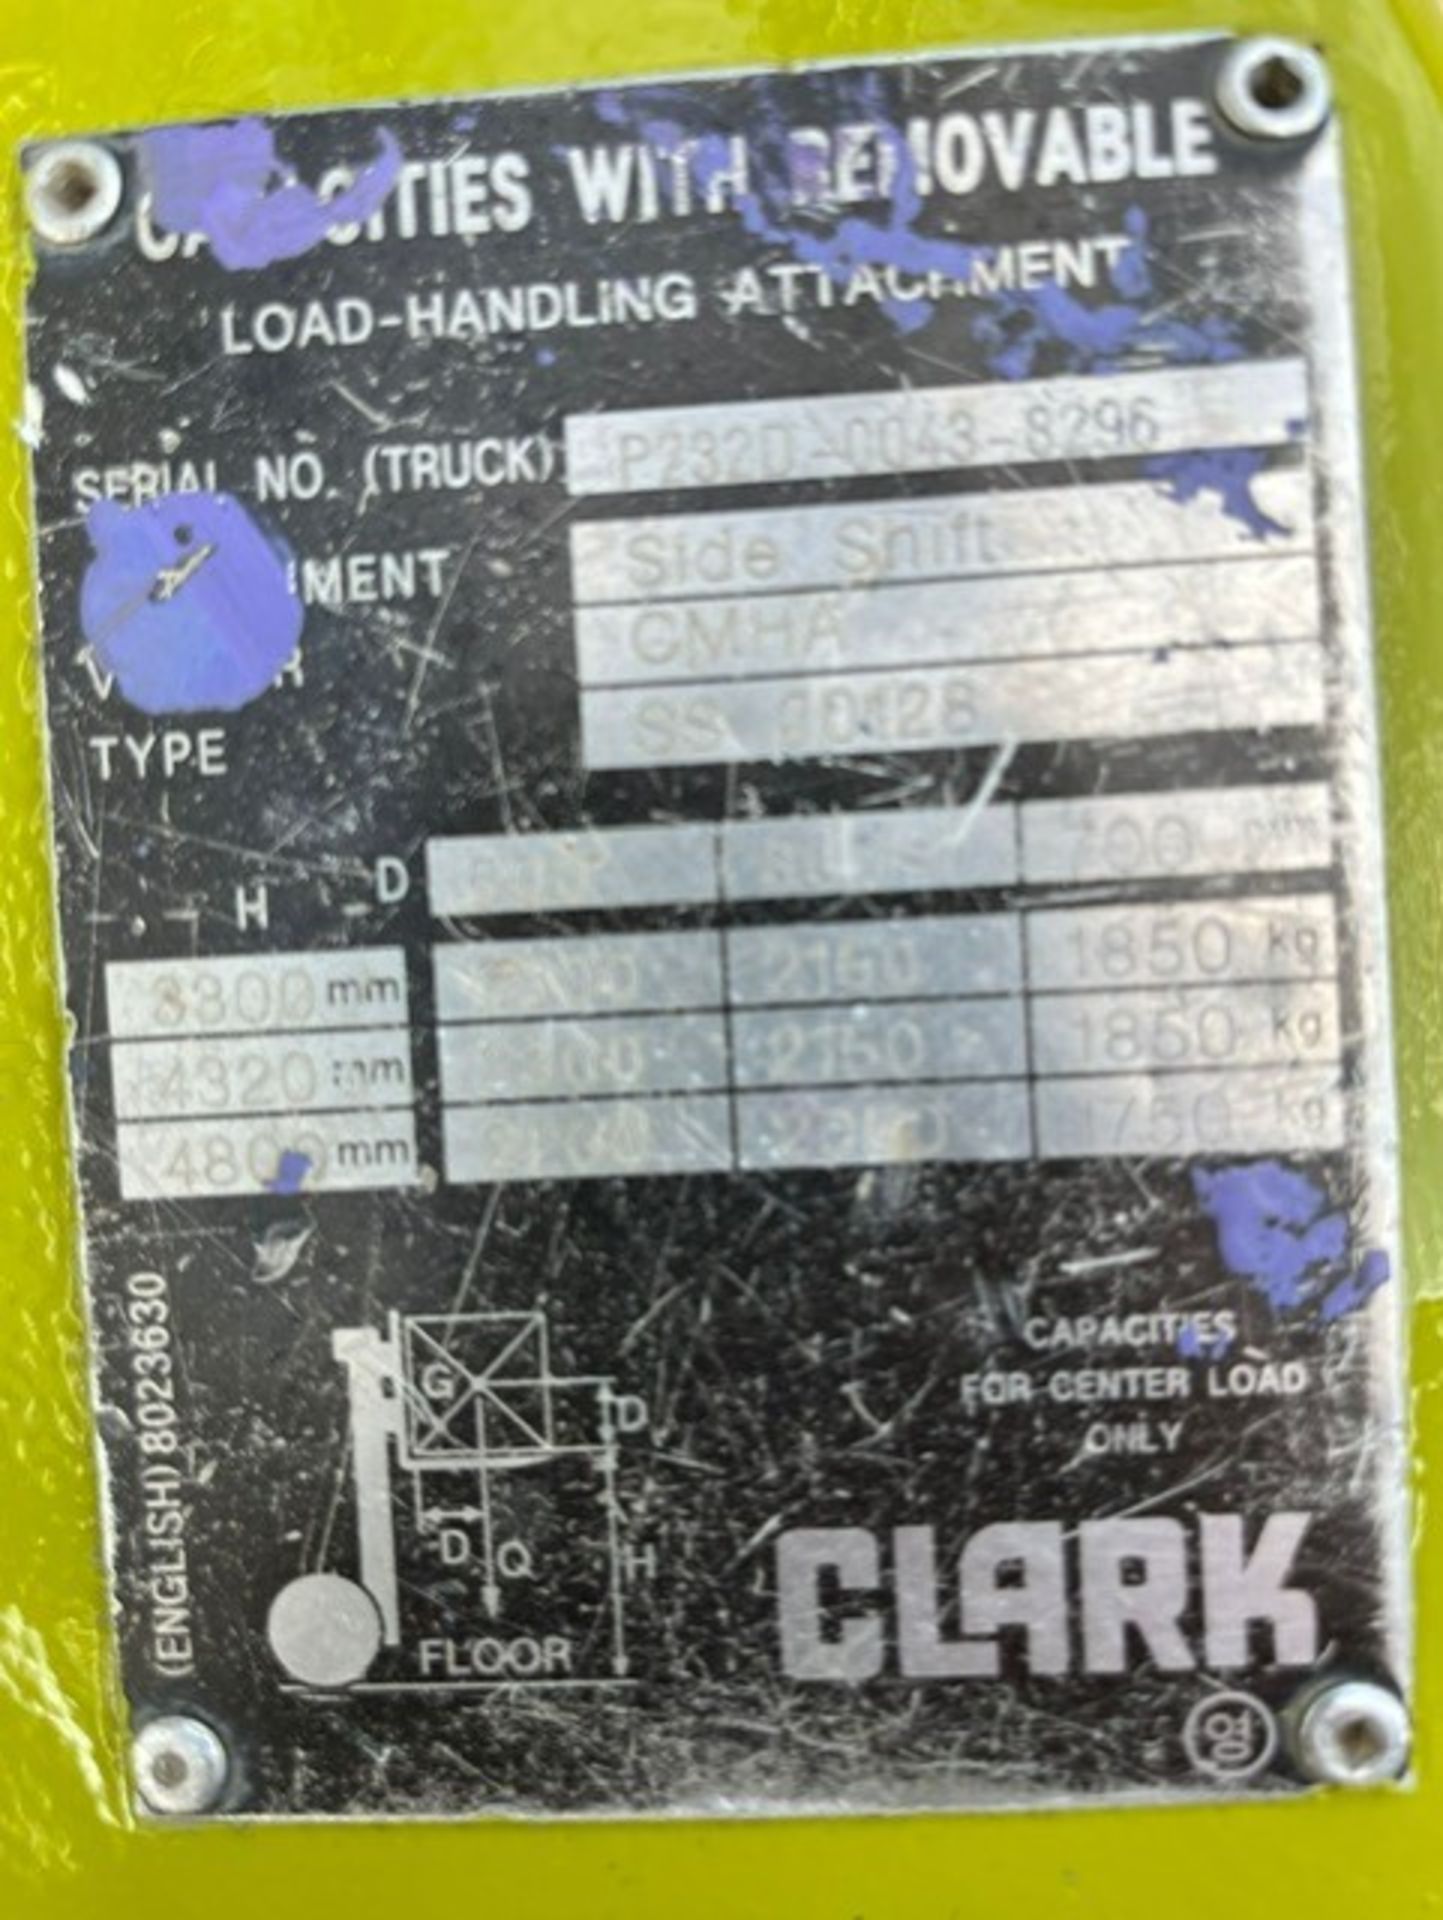 2016, CLARK 2.5 Tonne, Diesel Forklift - Image 8 of 8